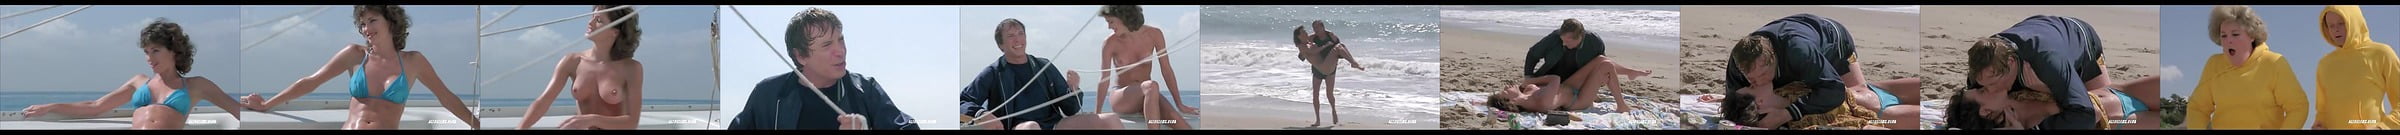 Alex Kingston Nude In Virtual Encounters 2 Scandalplanet 